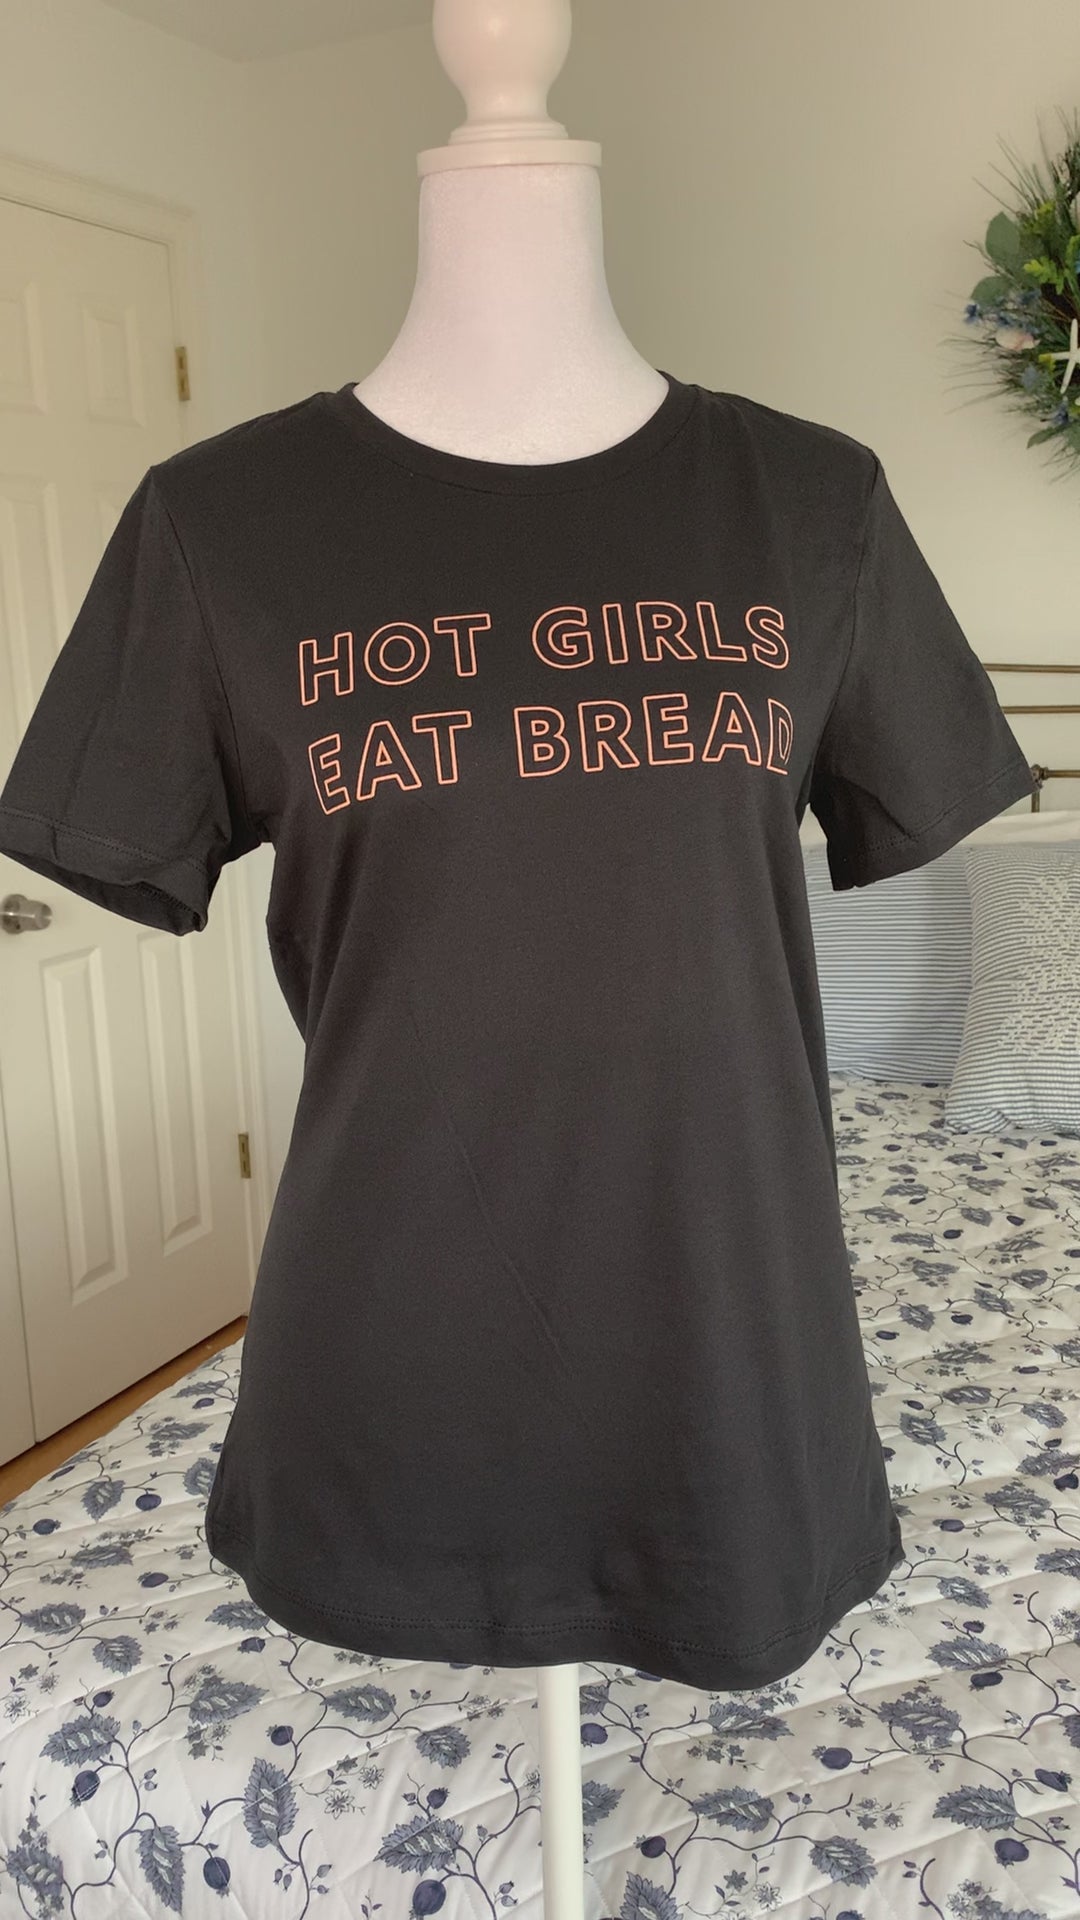 A dark grey tee that reads "Hot Girls Eat Bread" hangs on a manikin 